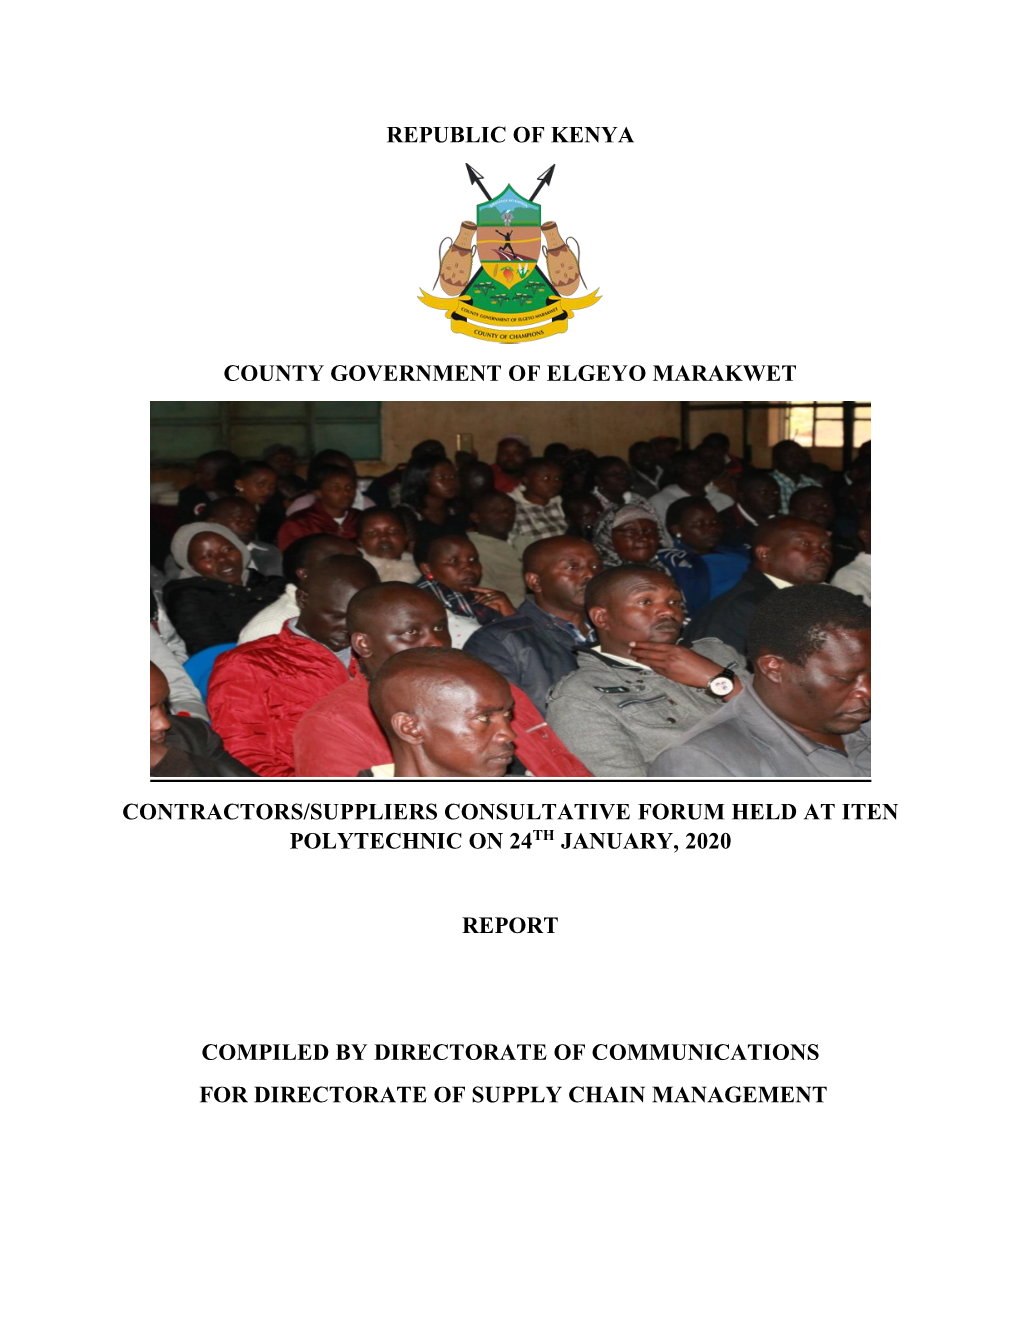 Republic of Kenya County Government of Elgeyo Marakwet